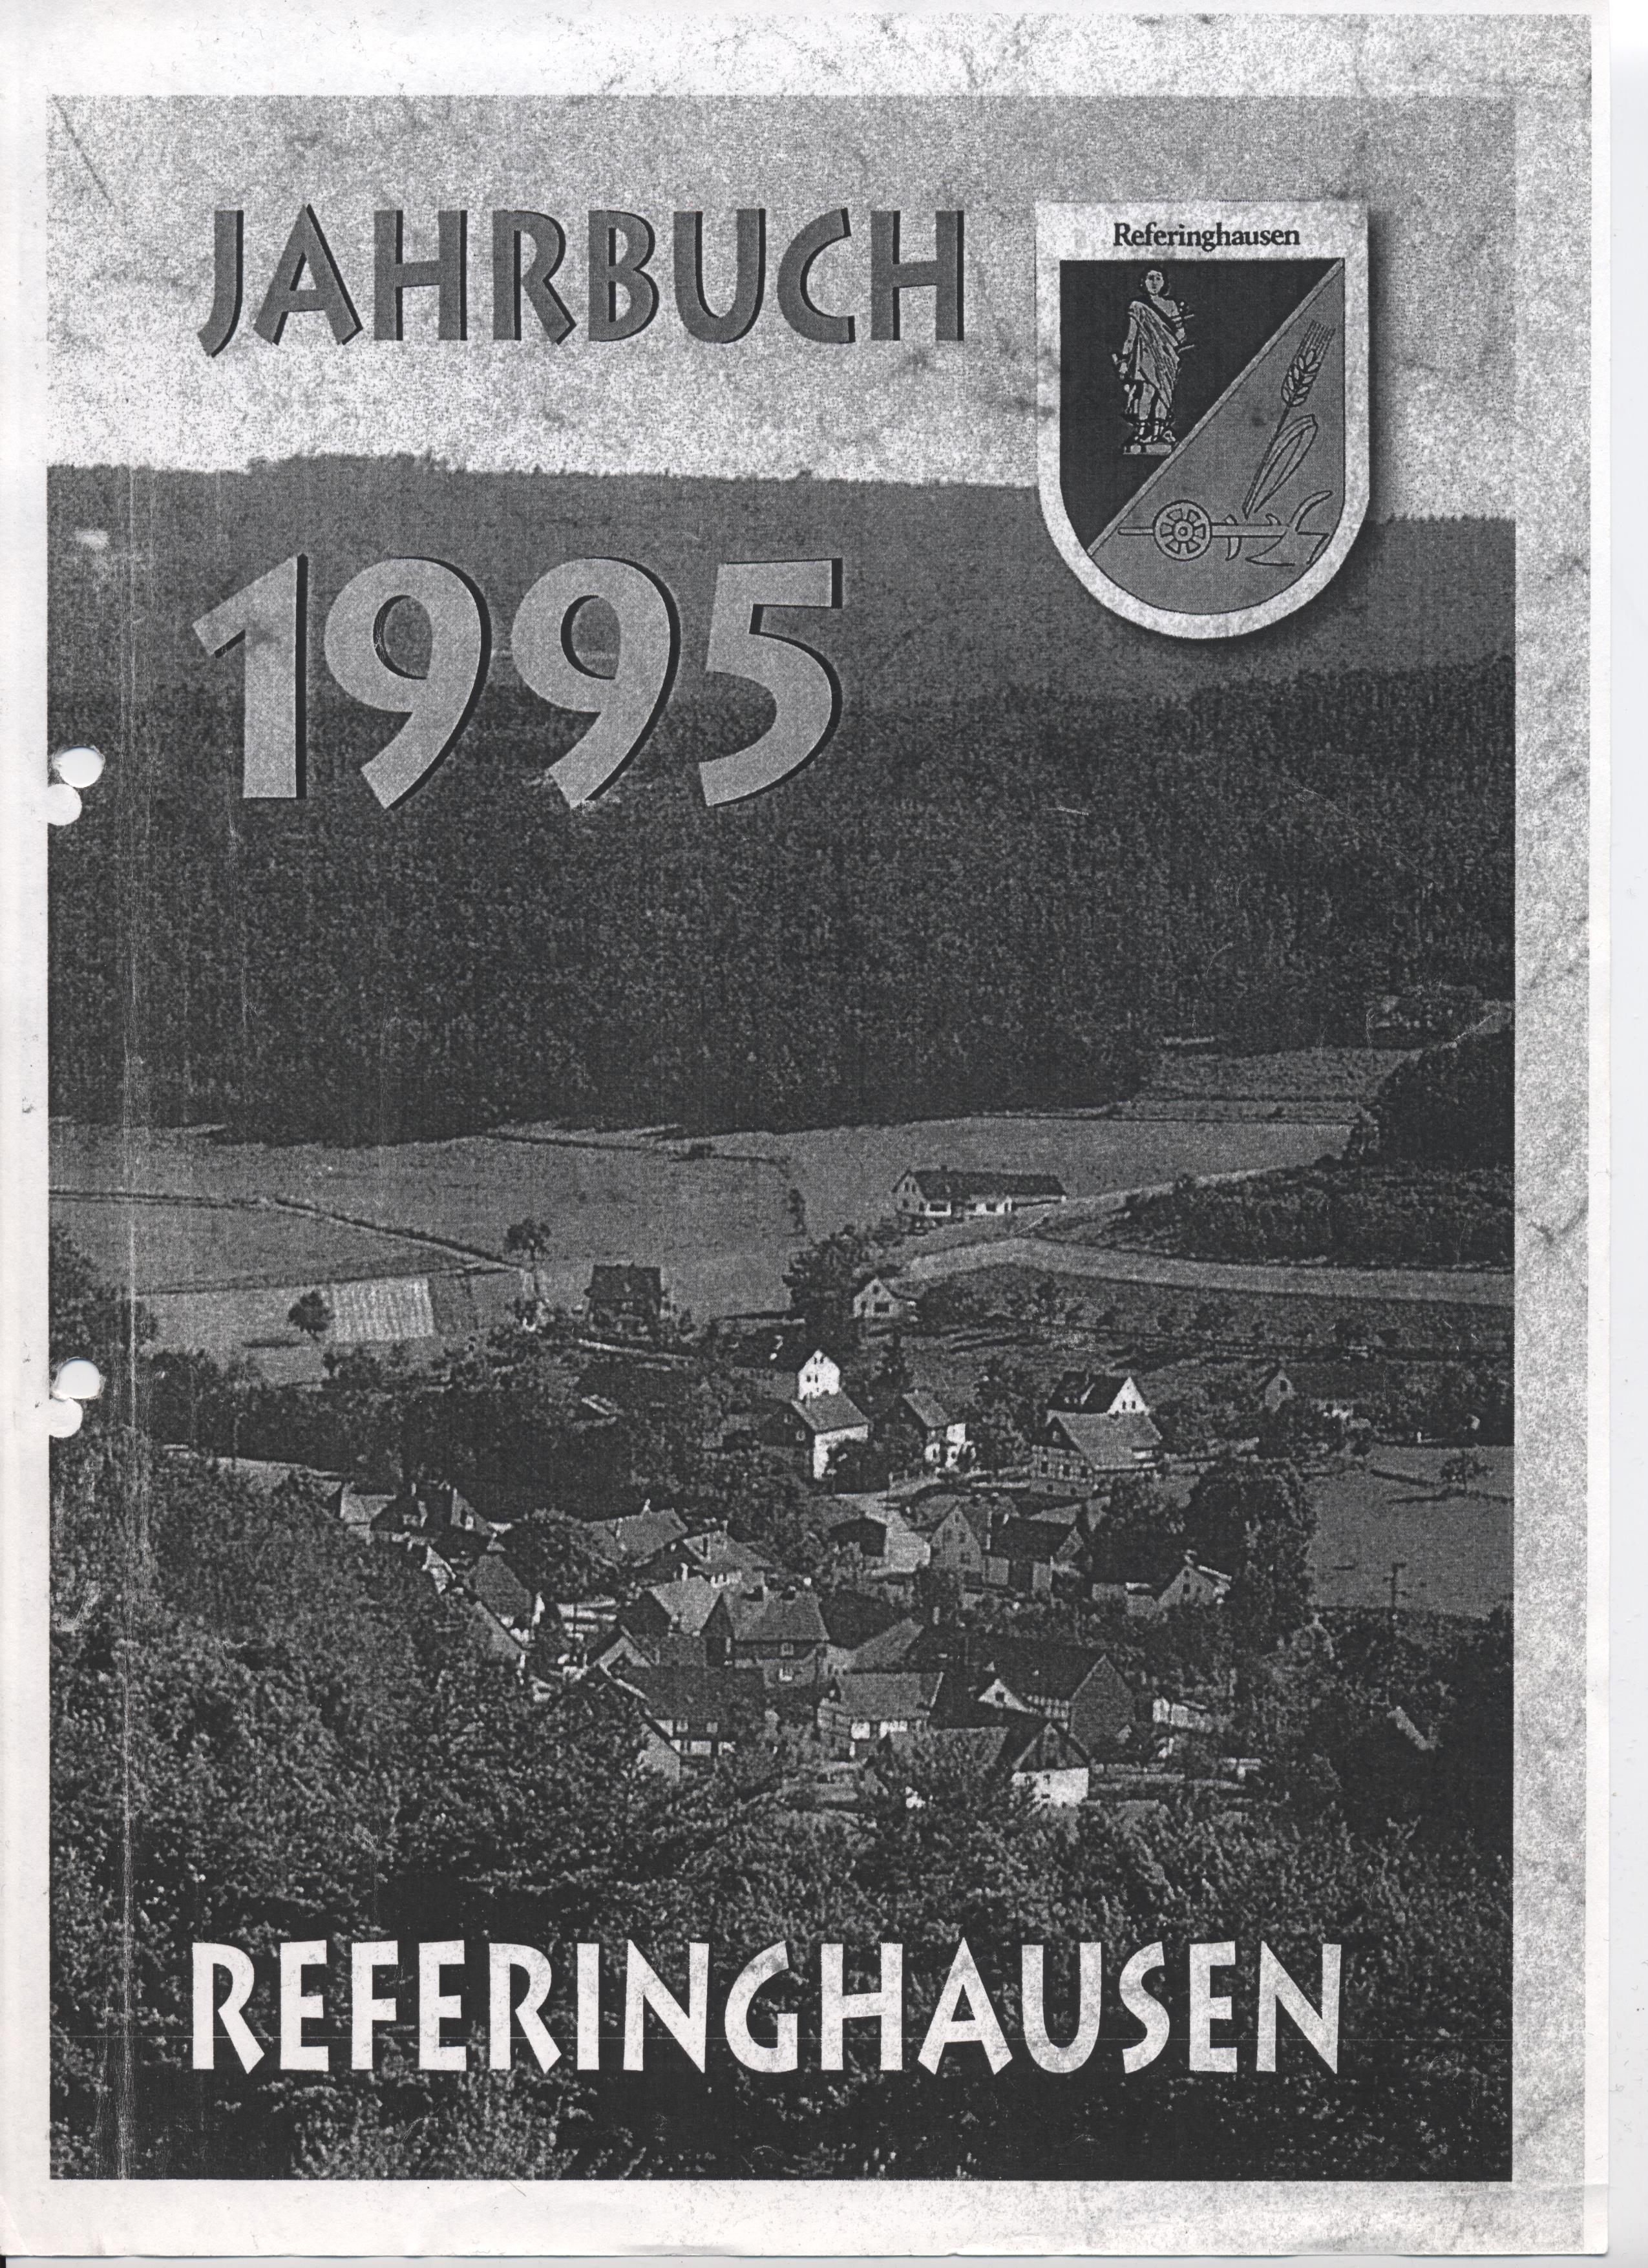 Jahrbuch von 1995